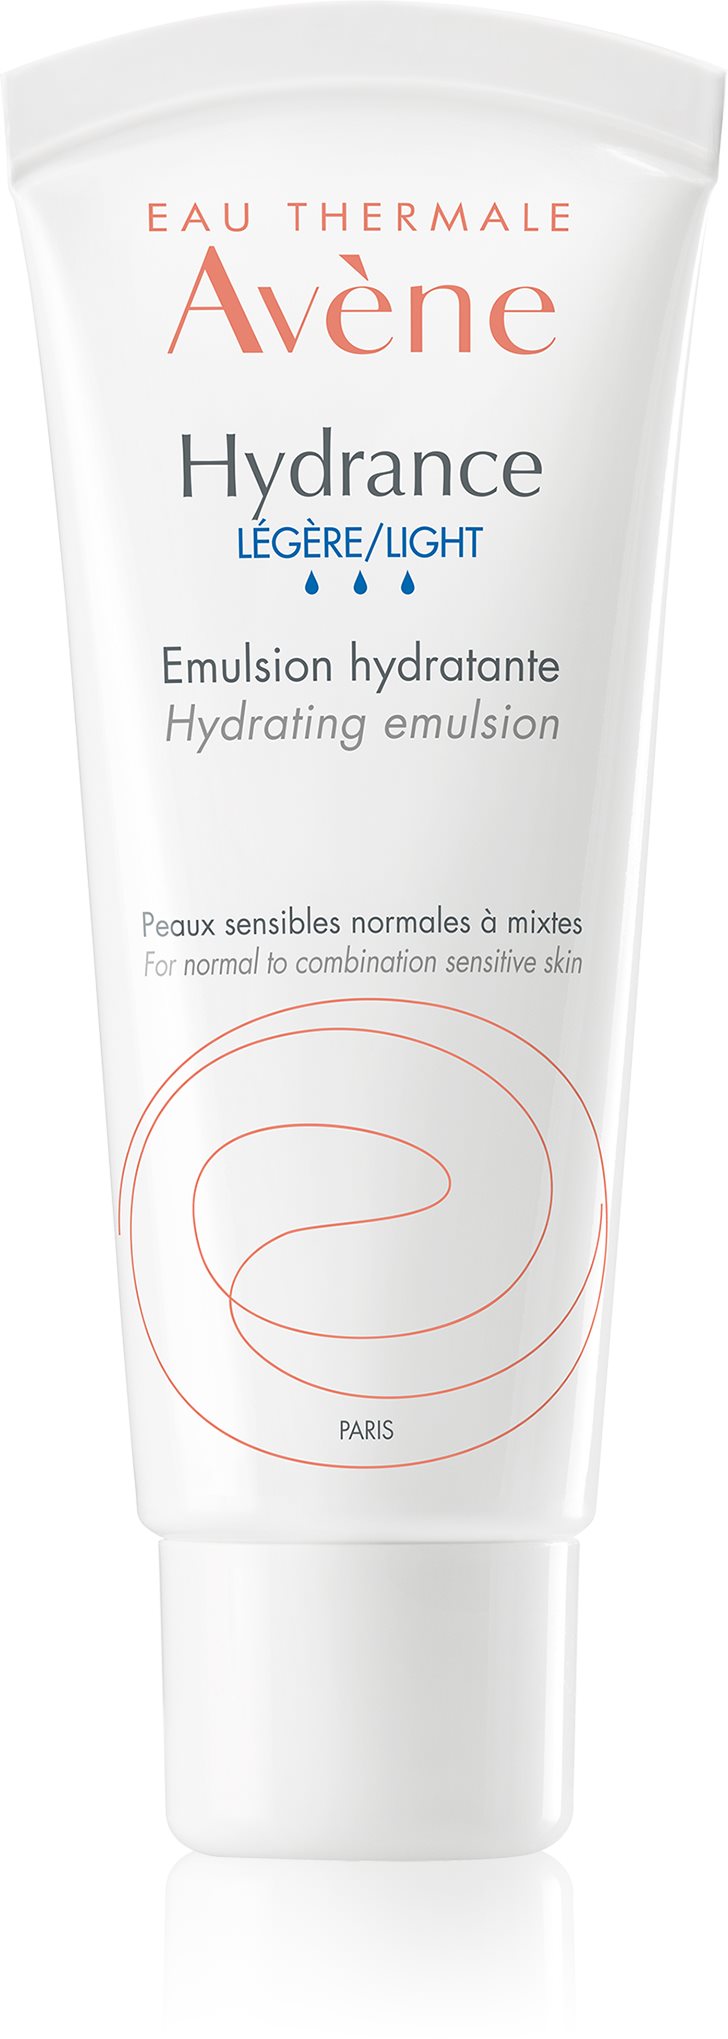 AVENE Hydrance Könnyű hidratáló emulzió normál és vegyes dehidratált érzékeny bőrre 40 ml